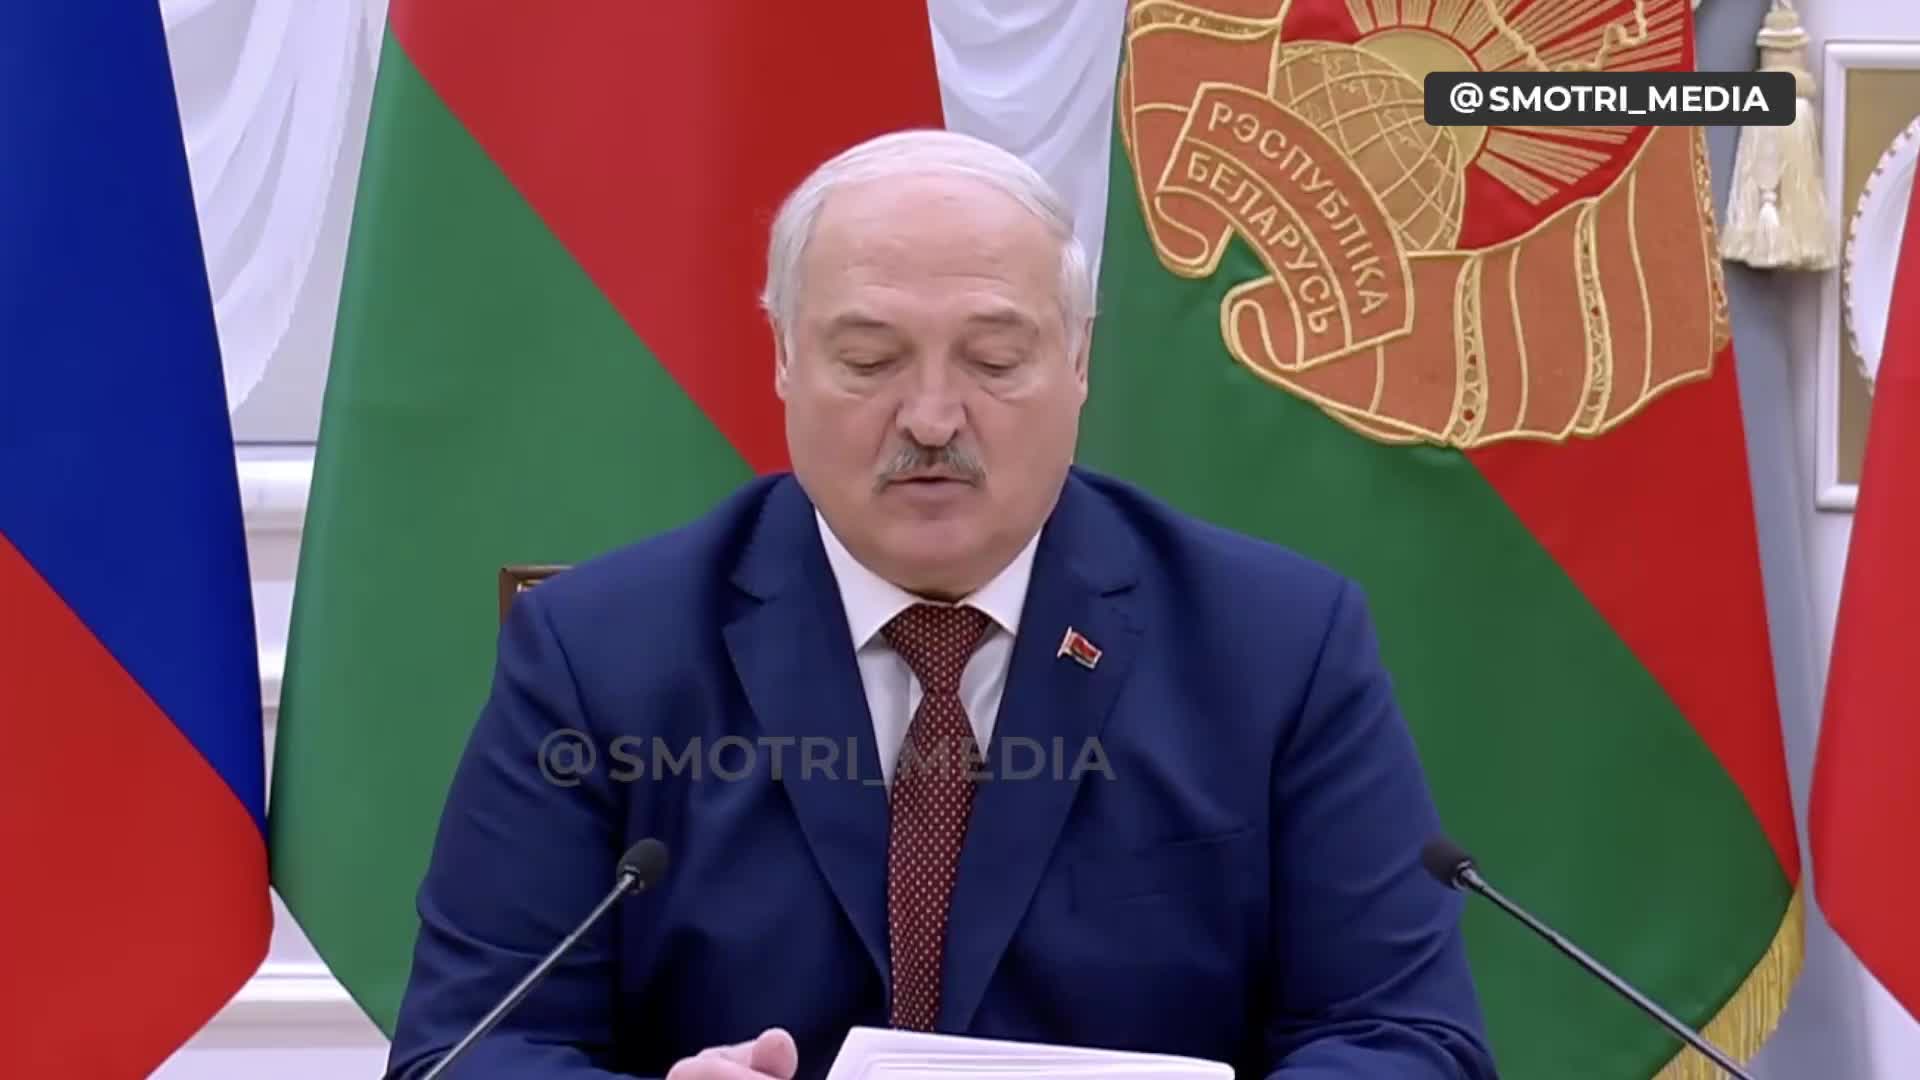 Łukaszenka powiedział, że omawiał z Putinem możliwości reakcji na zagrożenia w pobliżu granic Państwa Związkowego